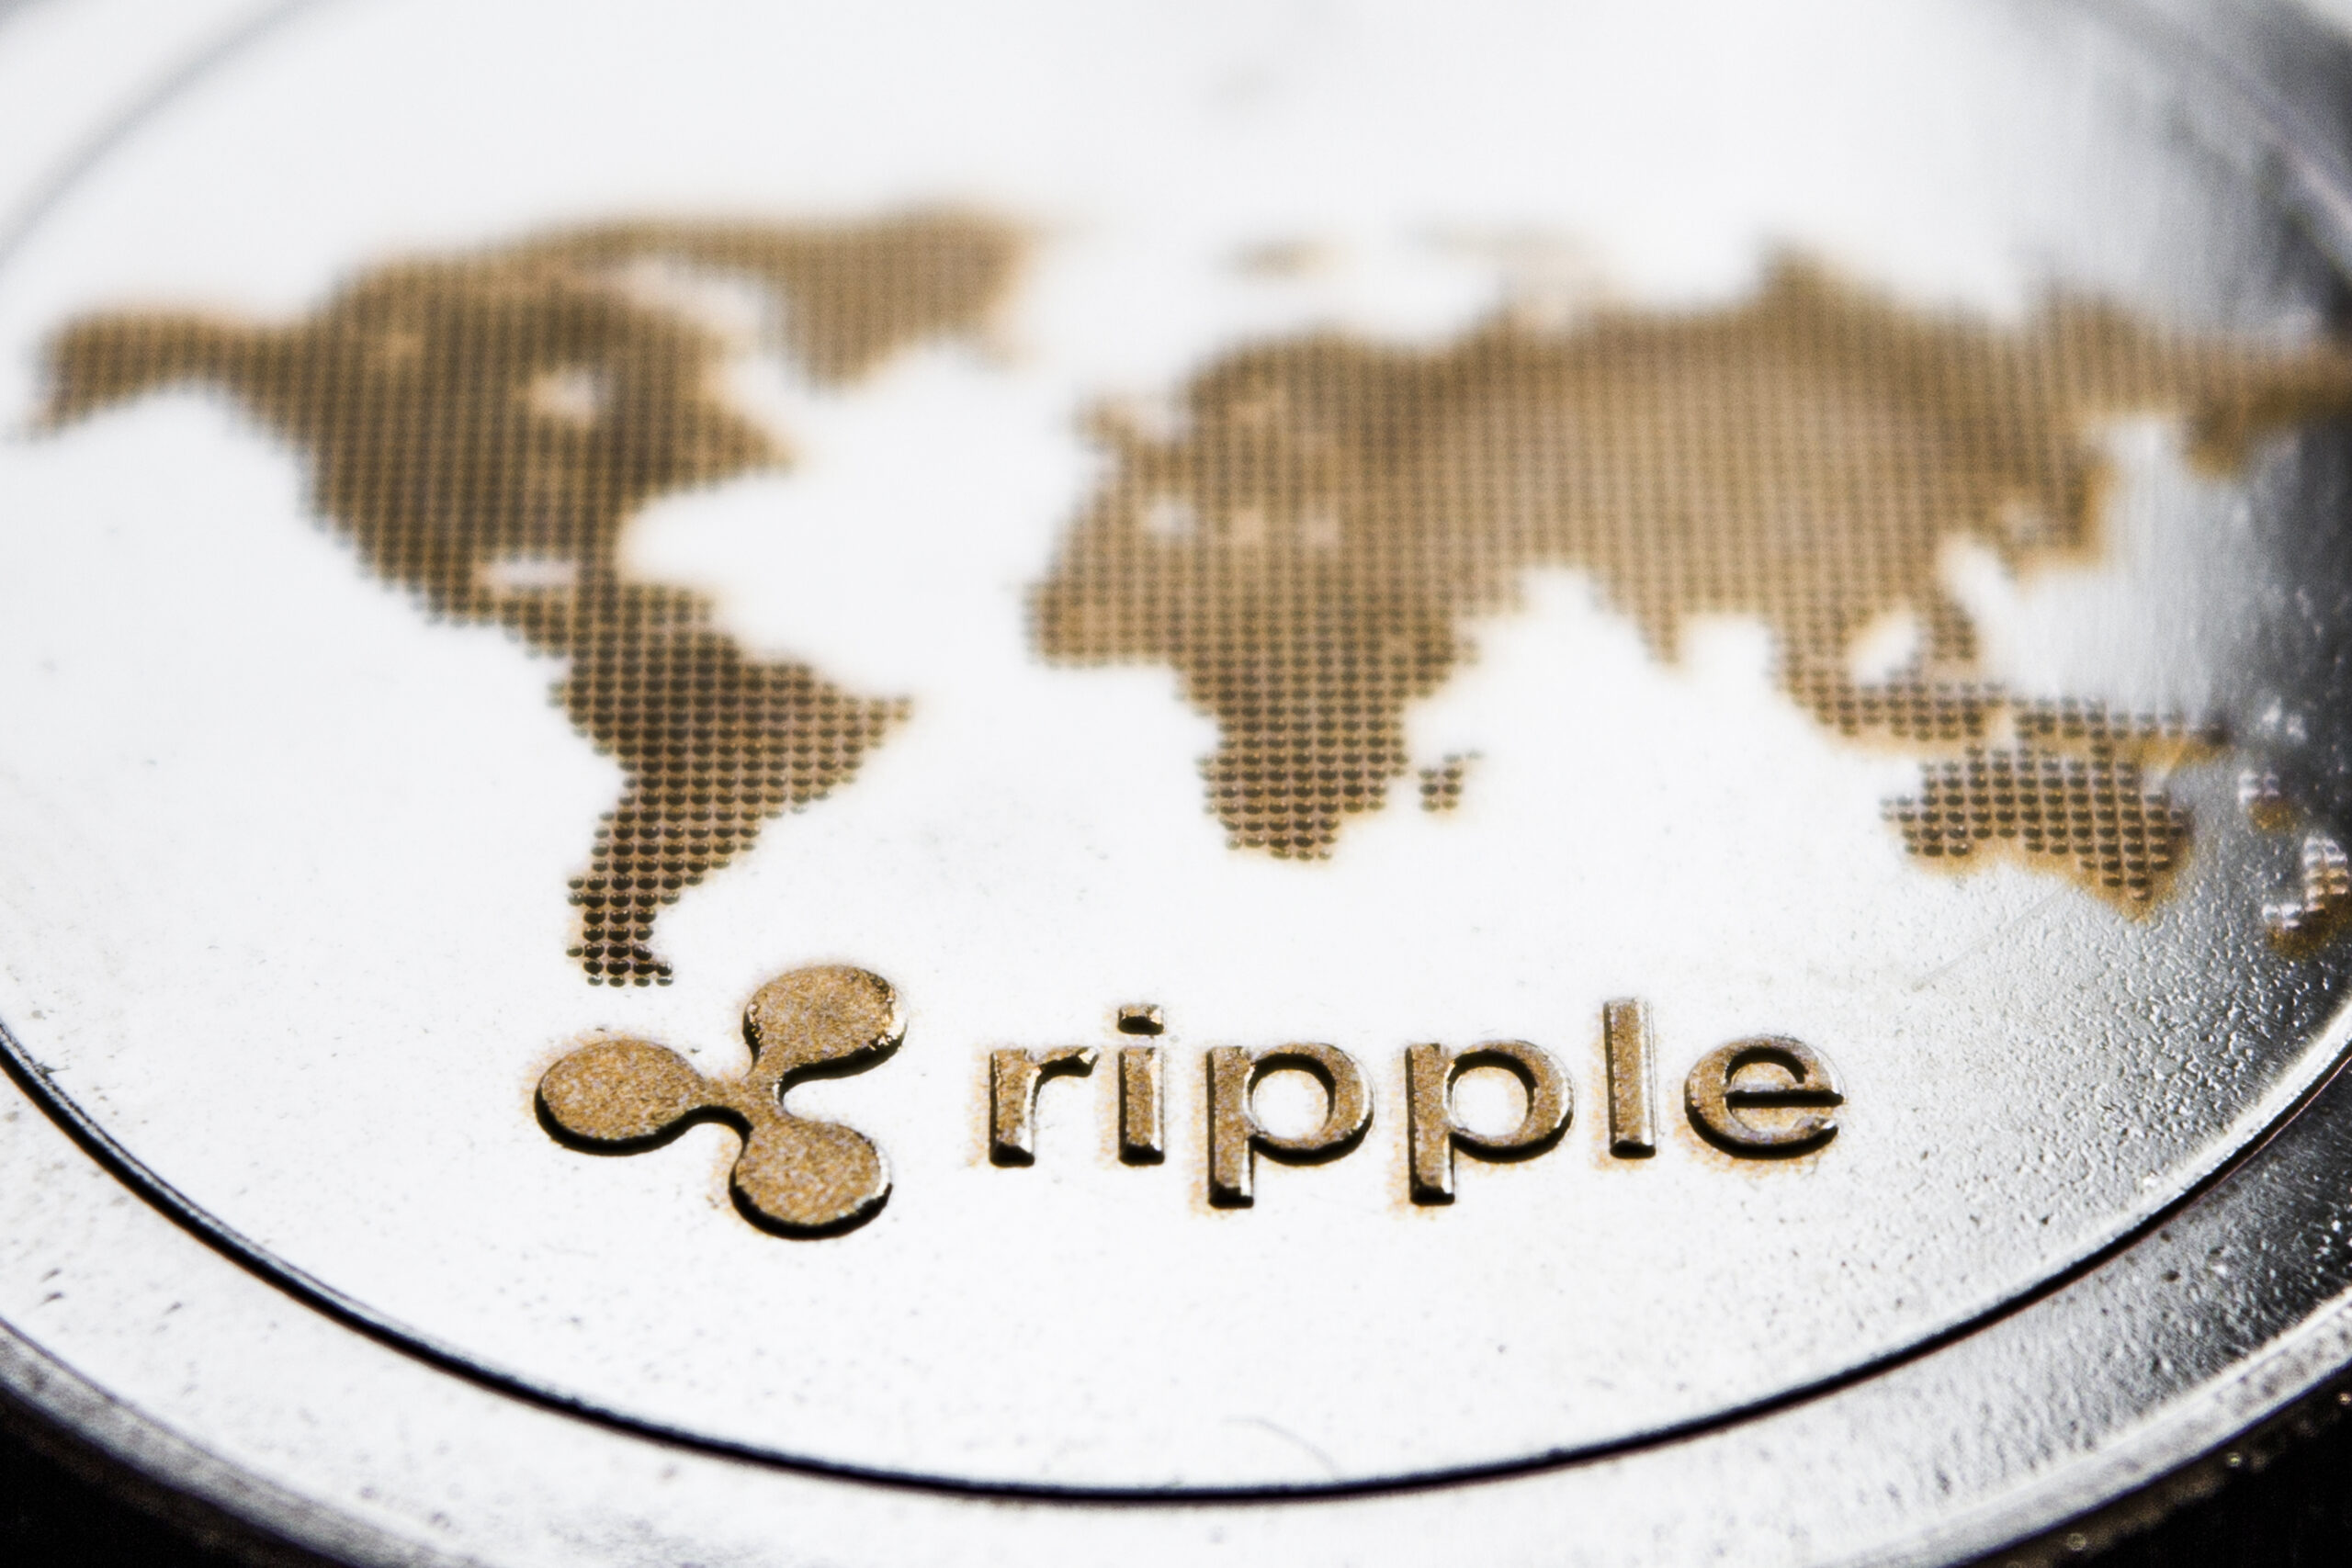 Ripple's logo